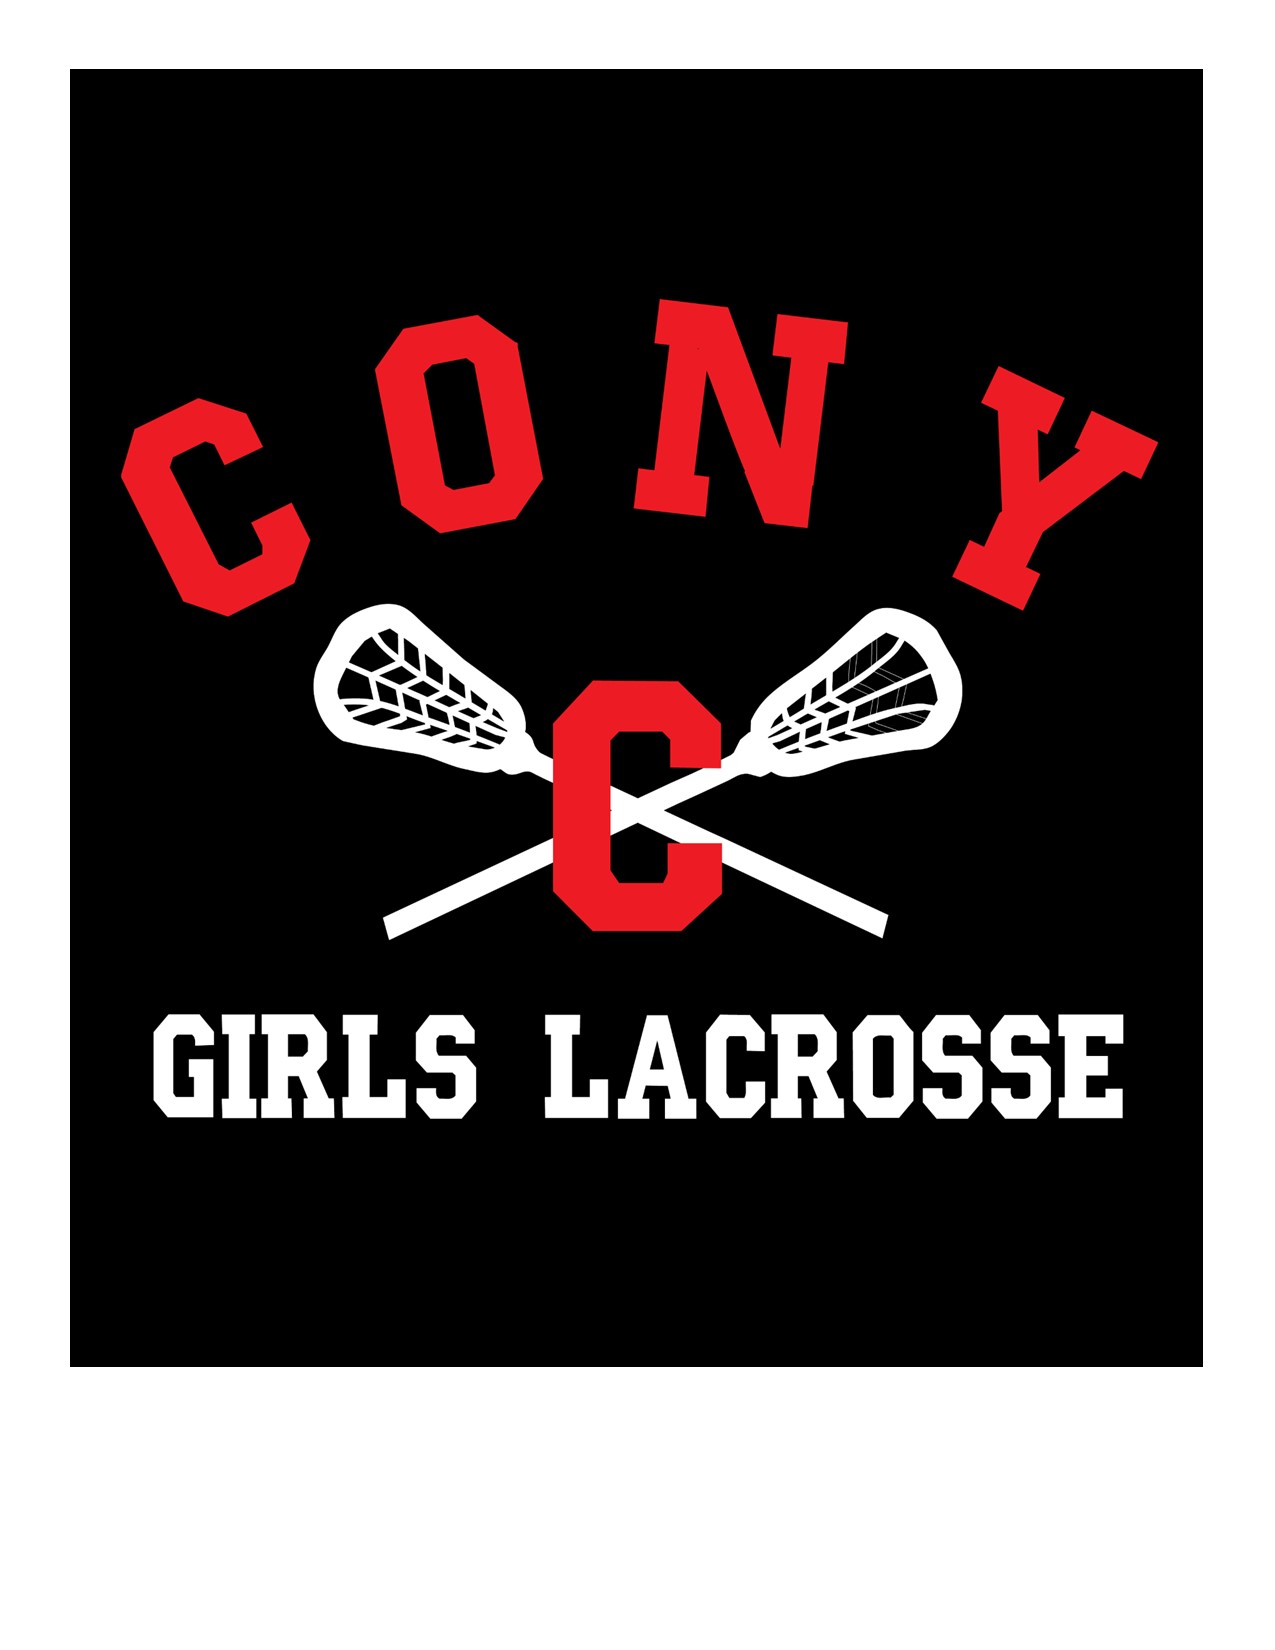 Cony lacrosse